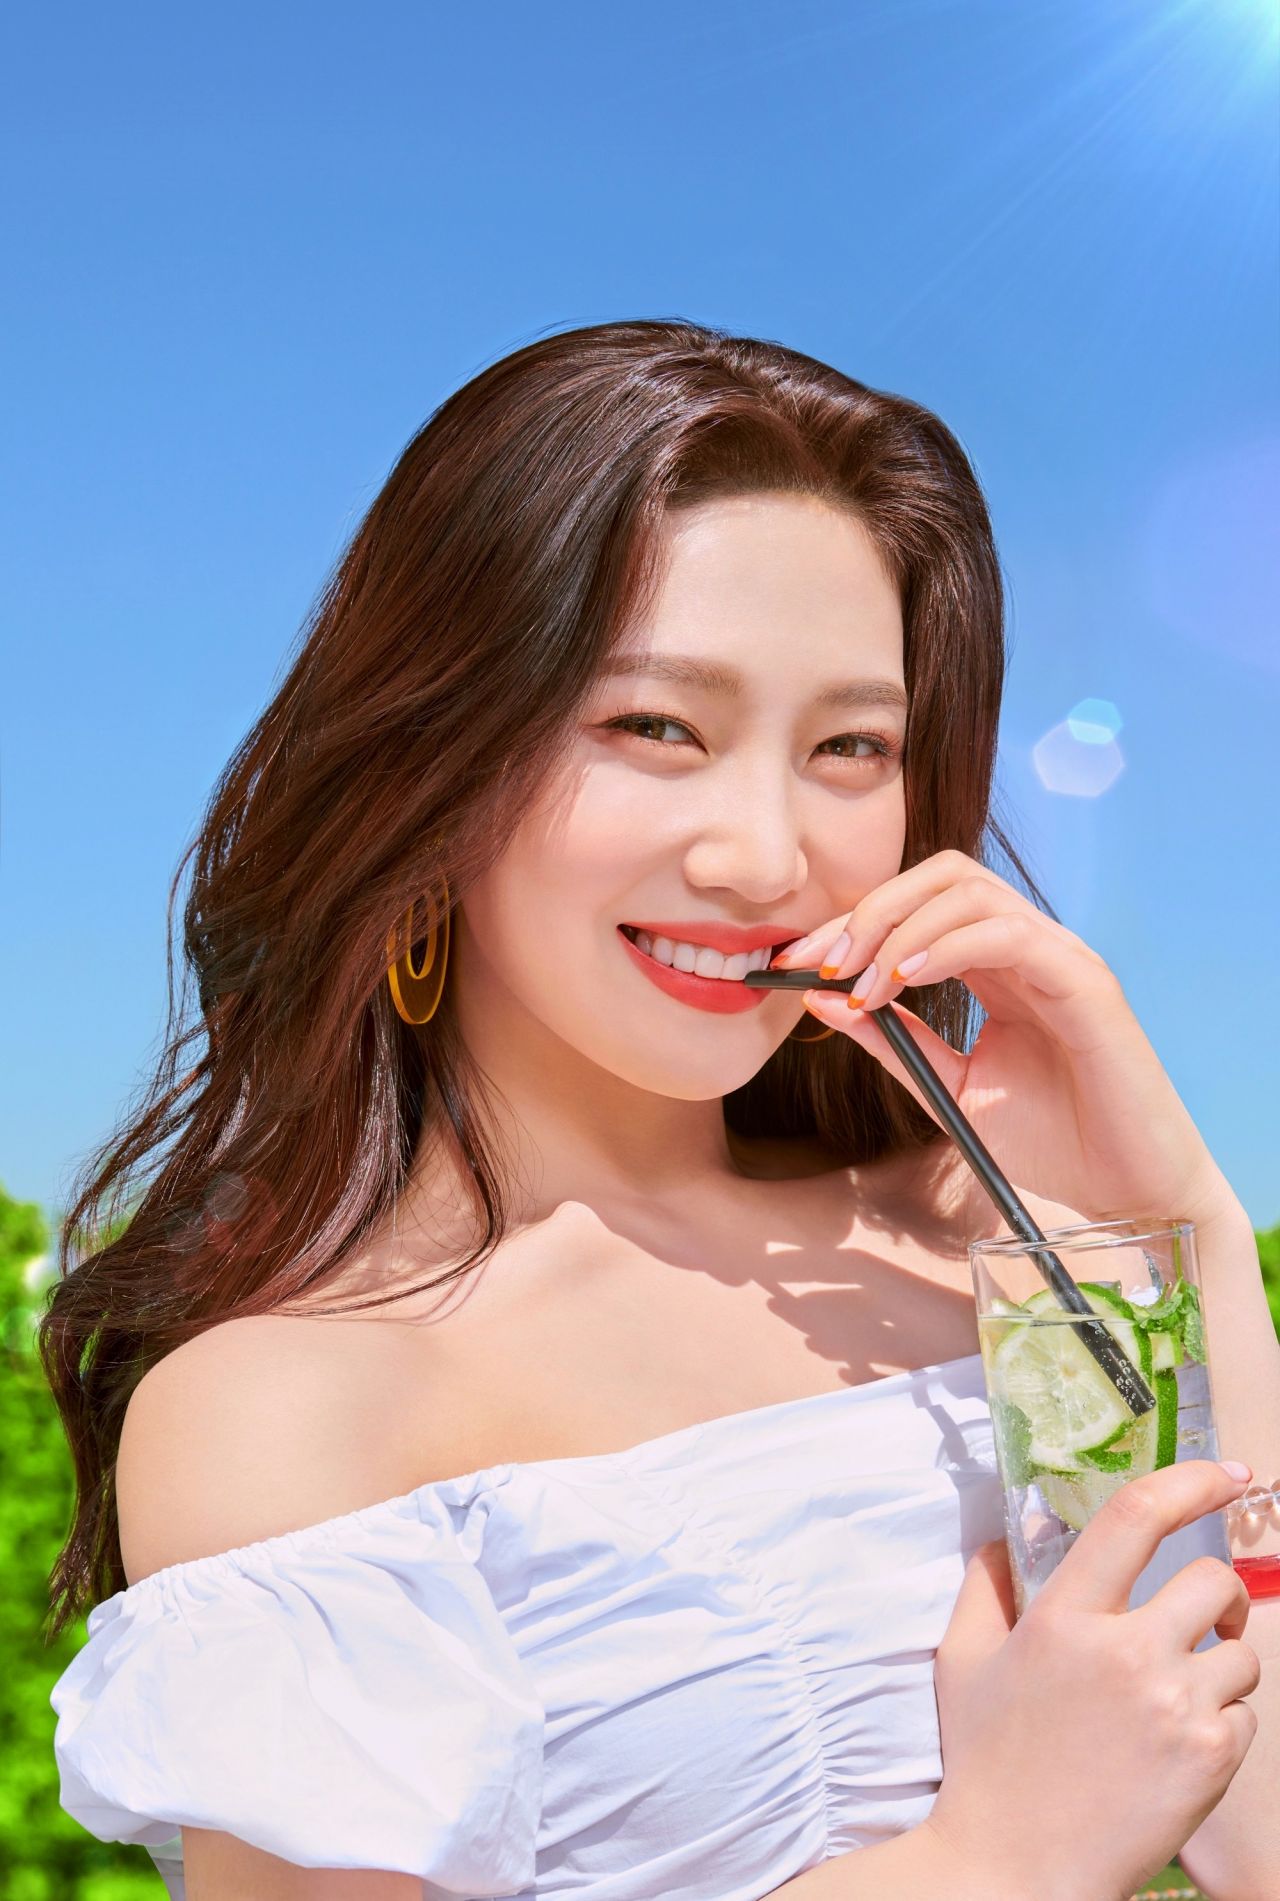 Red Velvet Joy Photoshoot For Espoir 2019 • Celebmafia